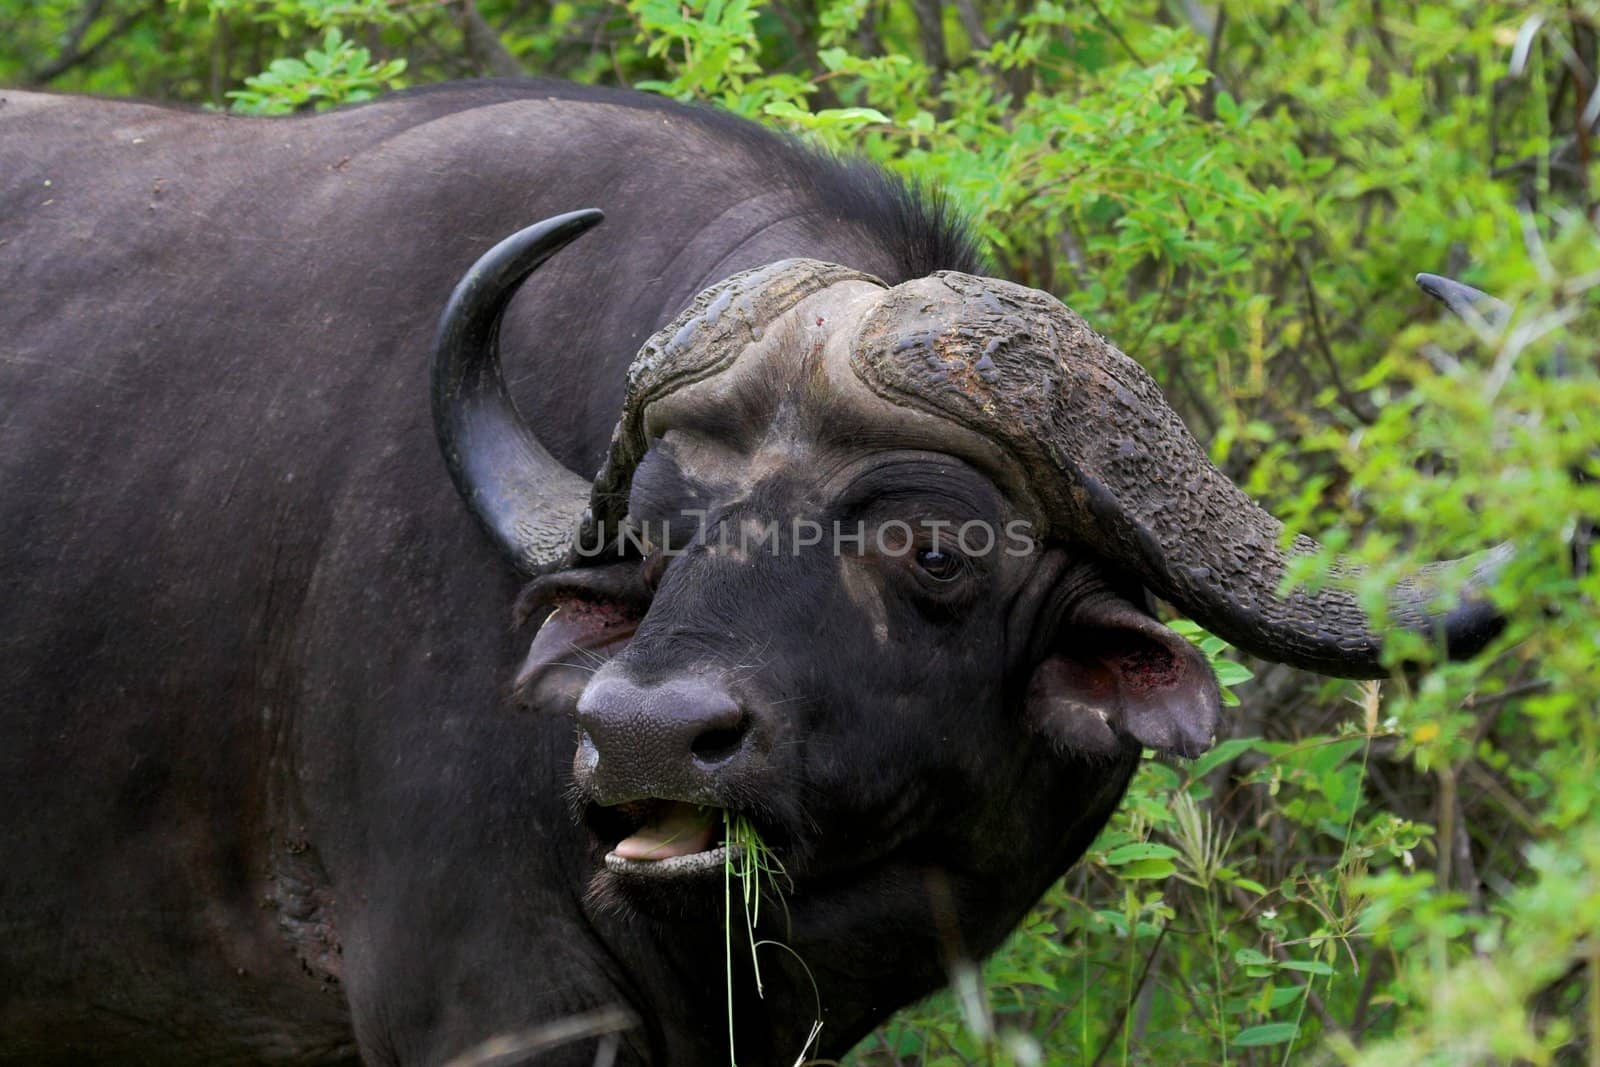 Feeding Buffalo by nightowlza